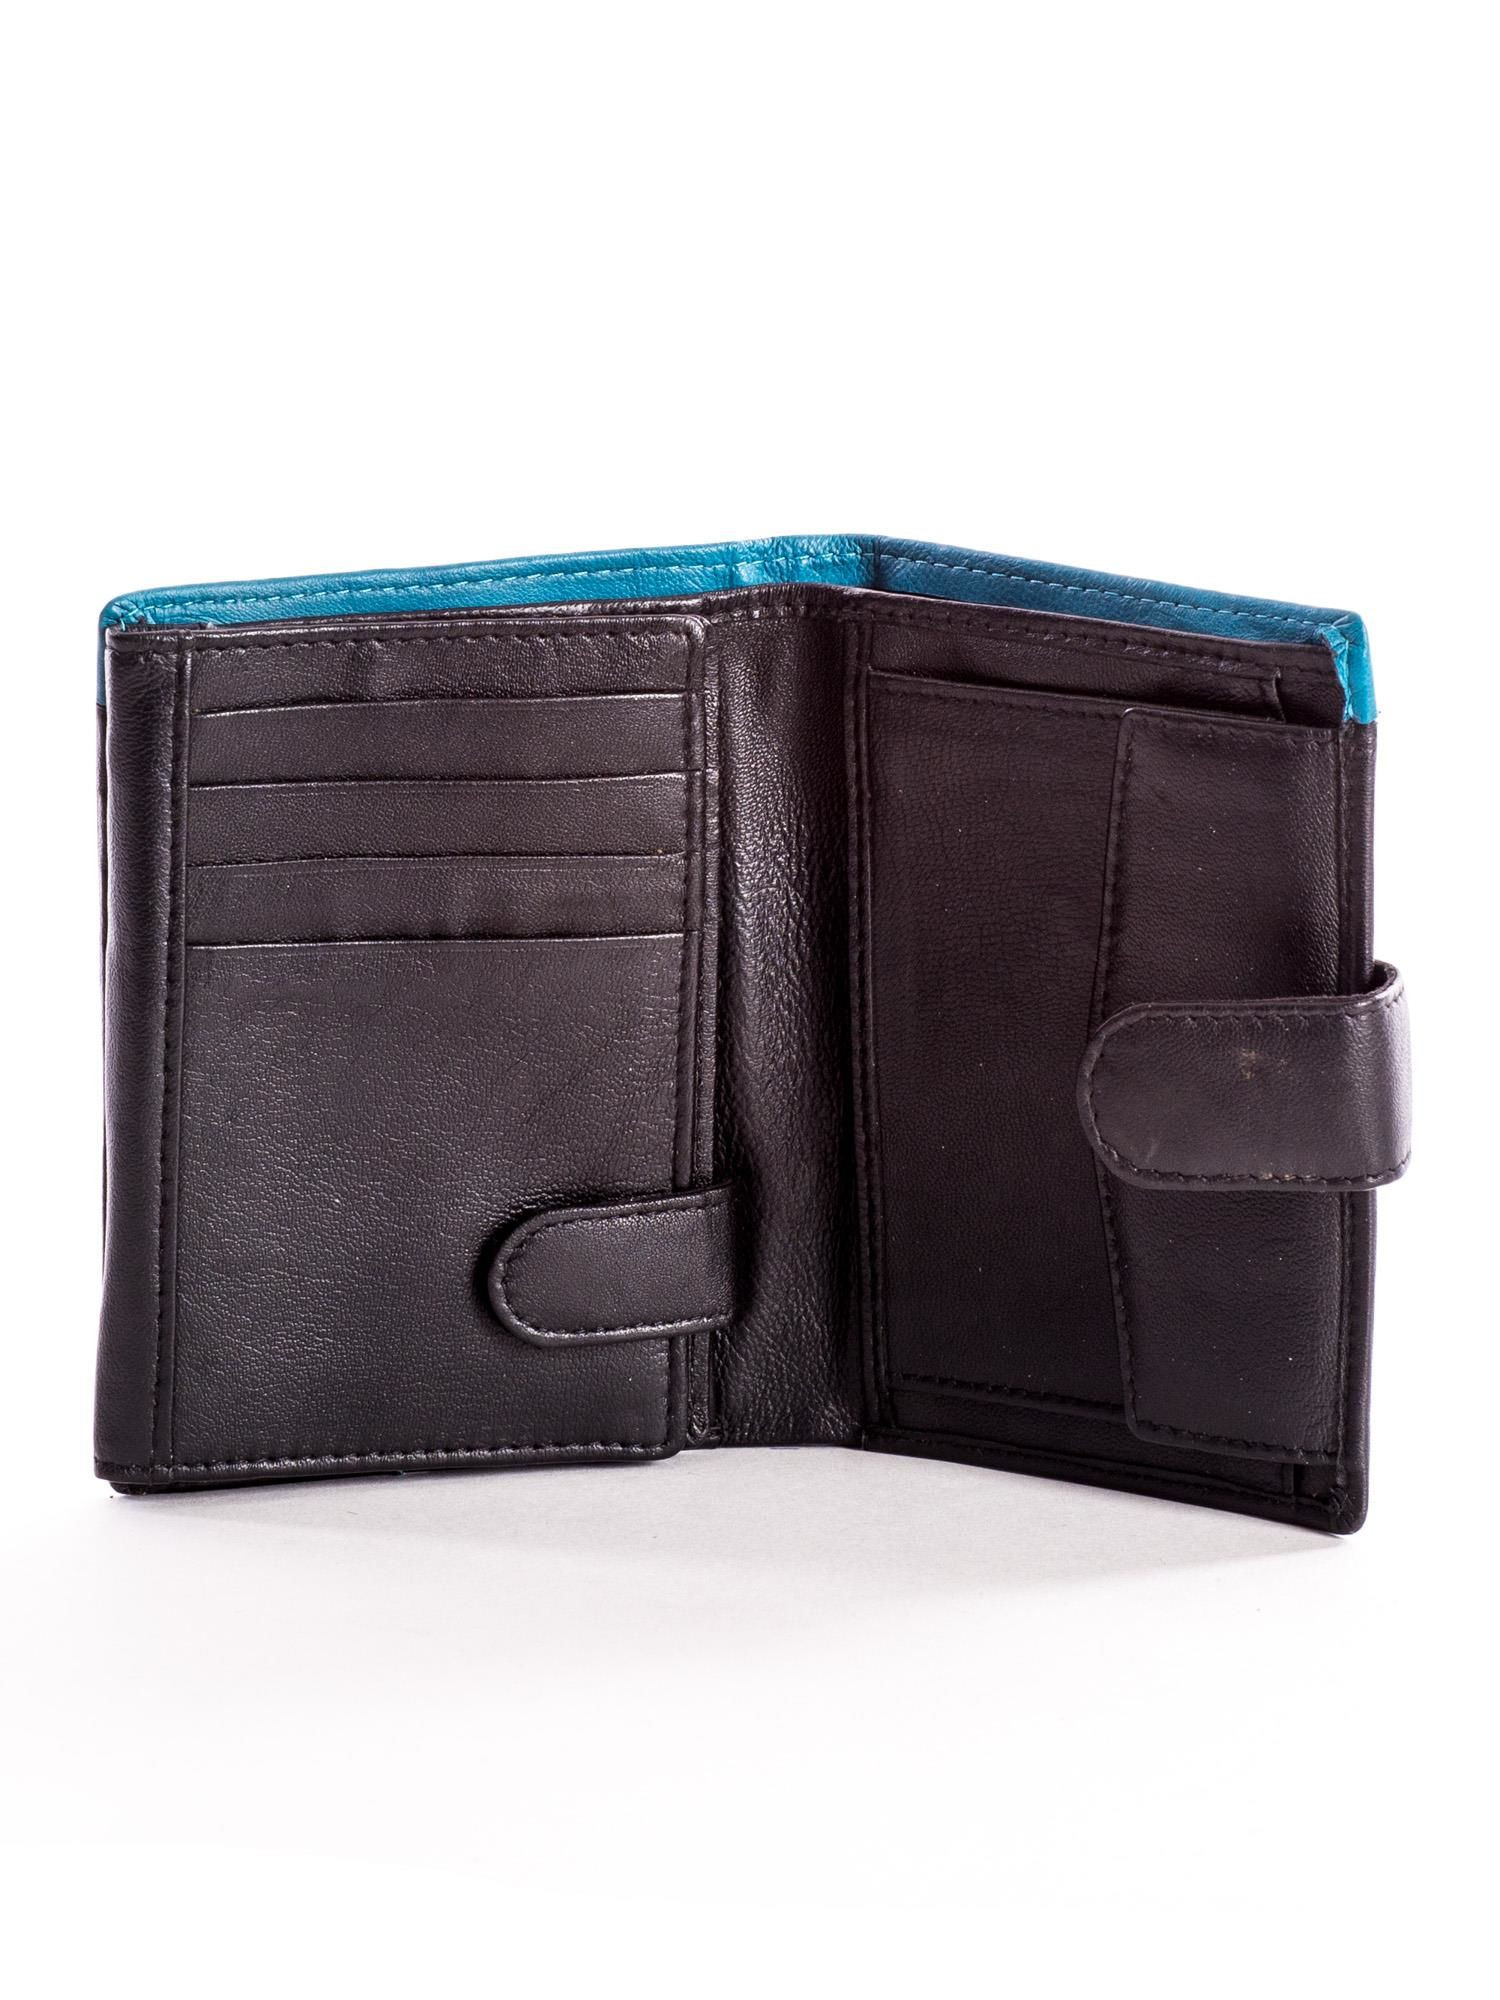 Peněženka CE PR černá a modrá jedna velikost model 14833536 - FPrice